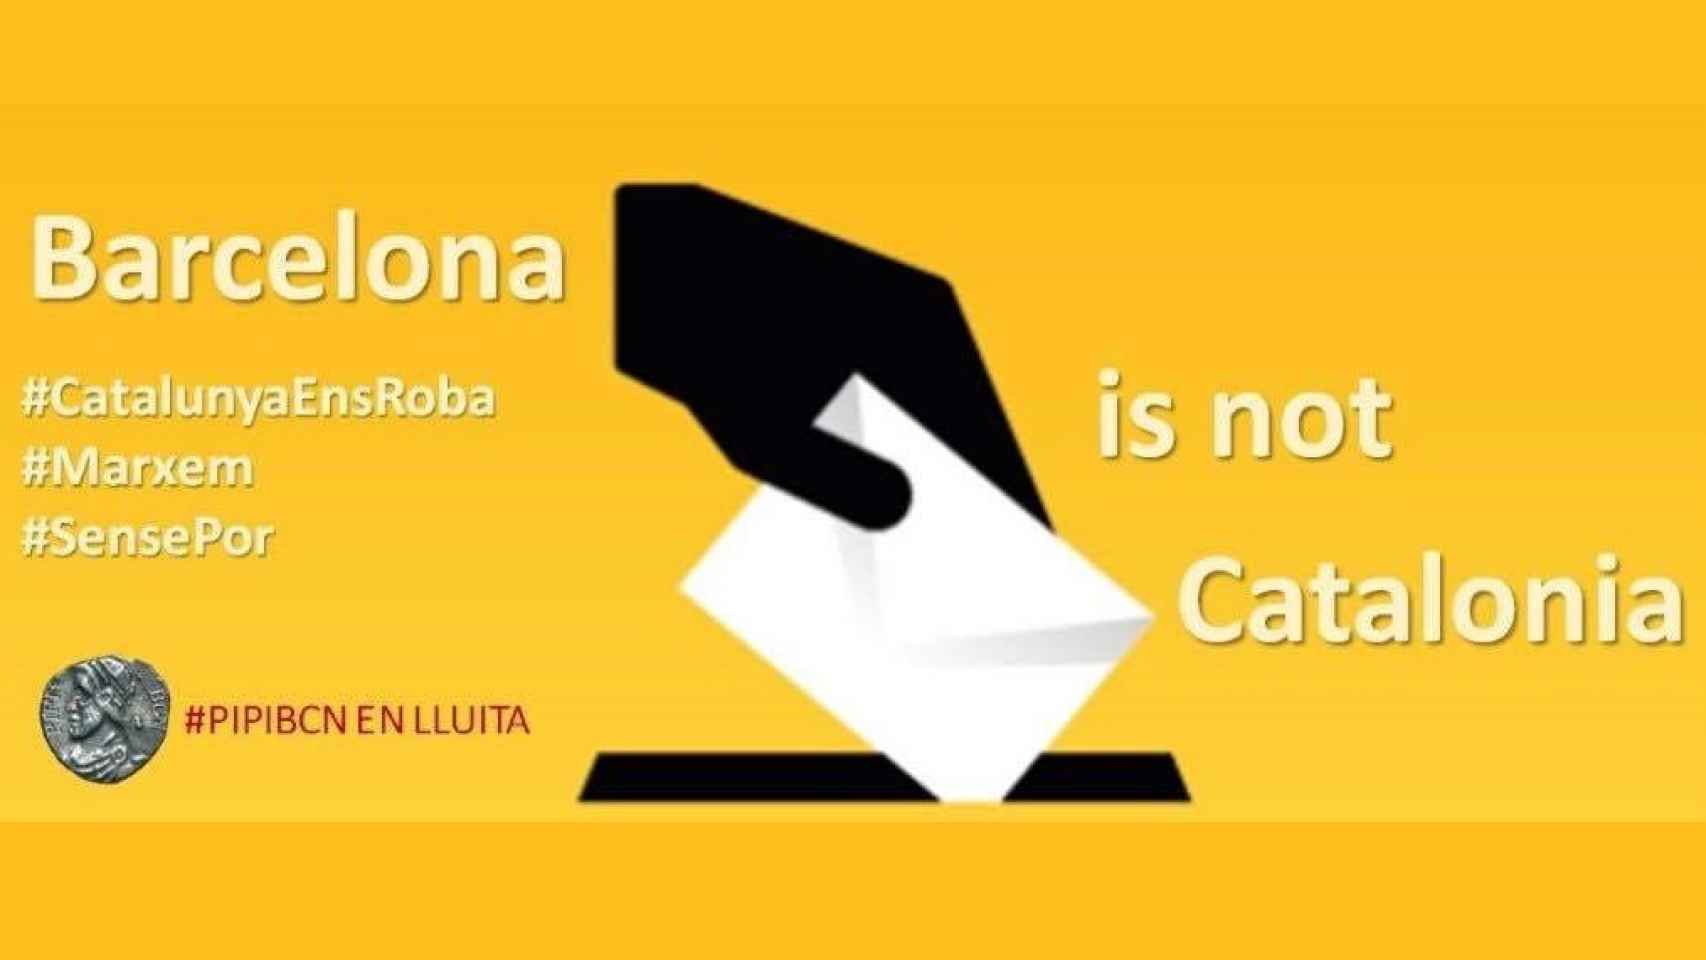 Los integristas del PIPI BCN quieren votar para separar Barcelona de Cataluña.